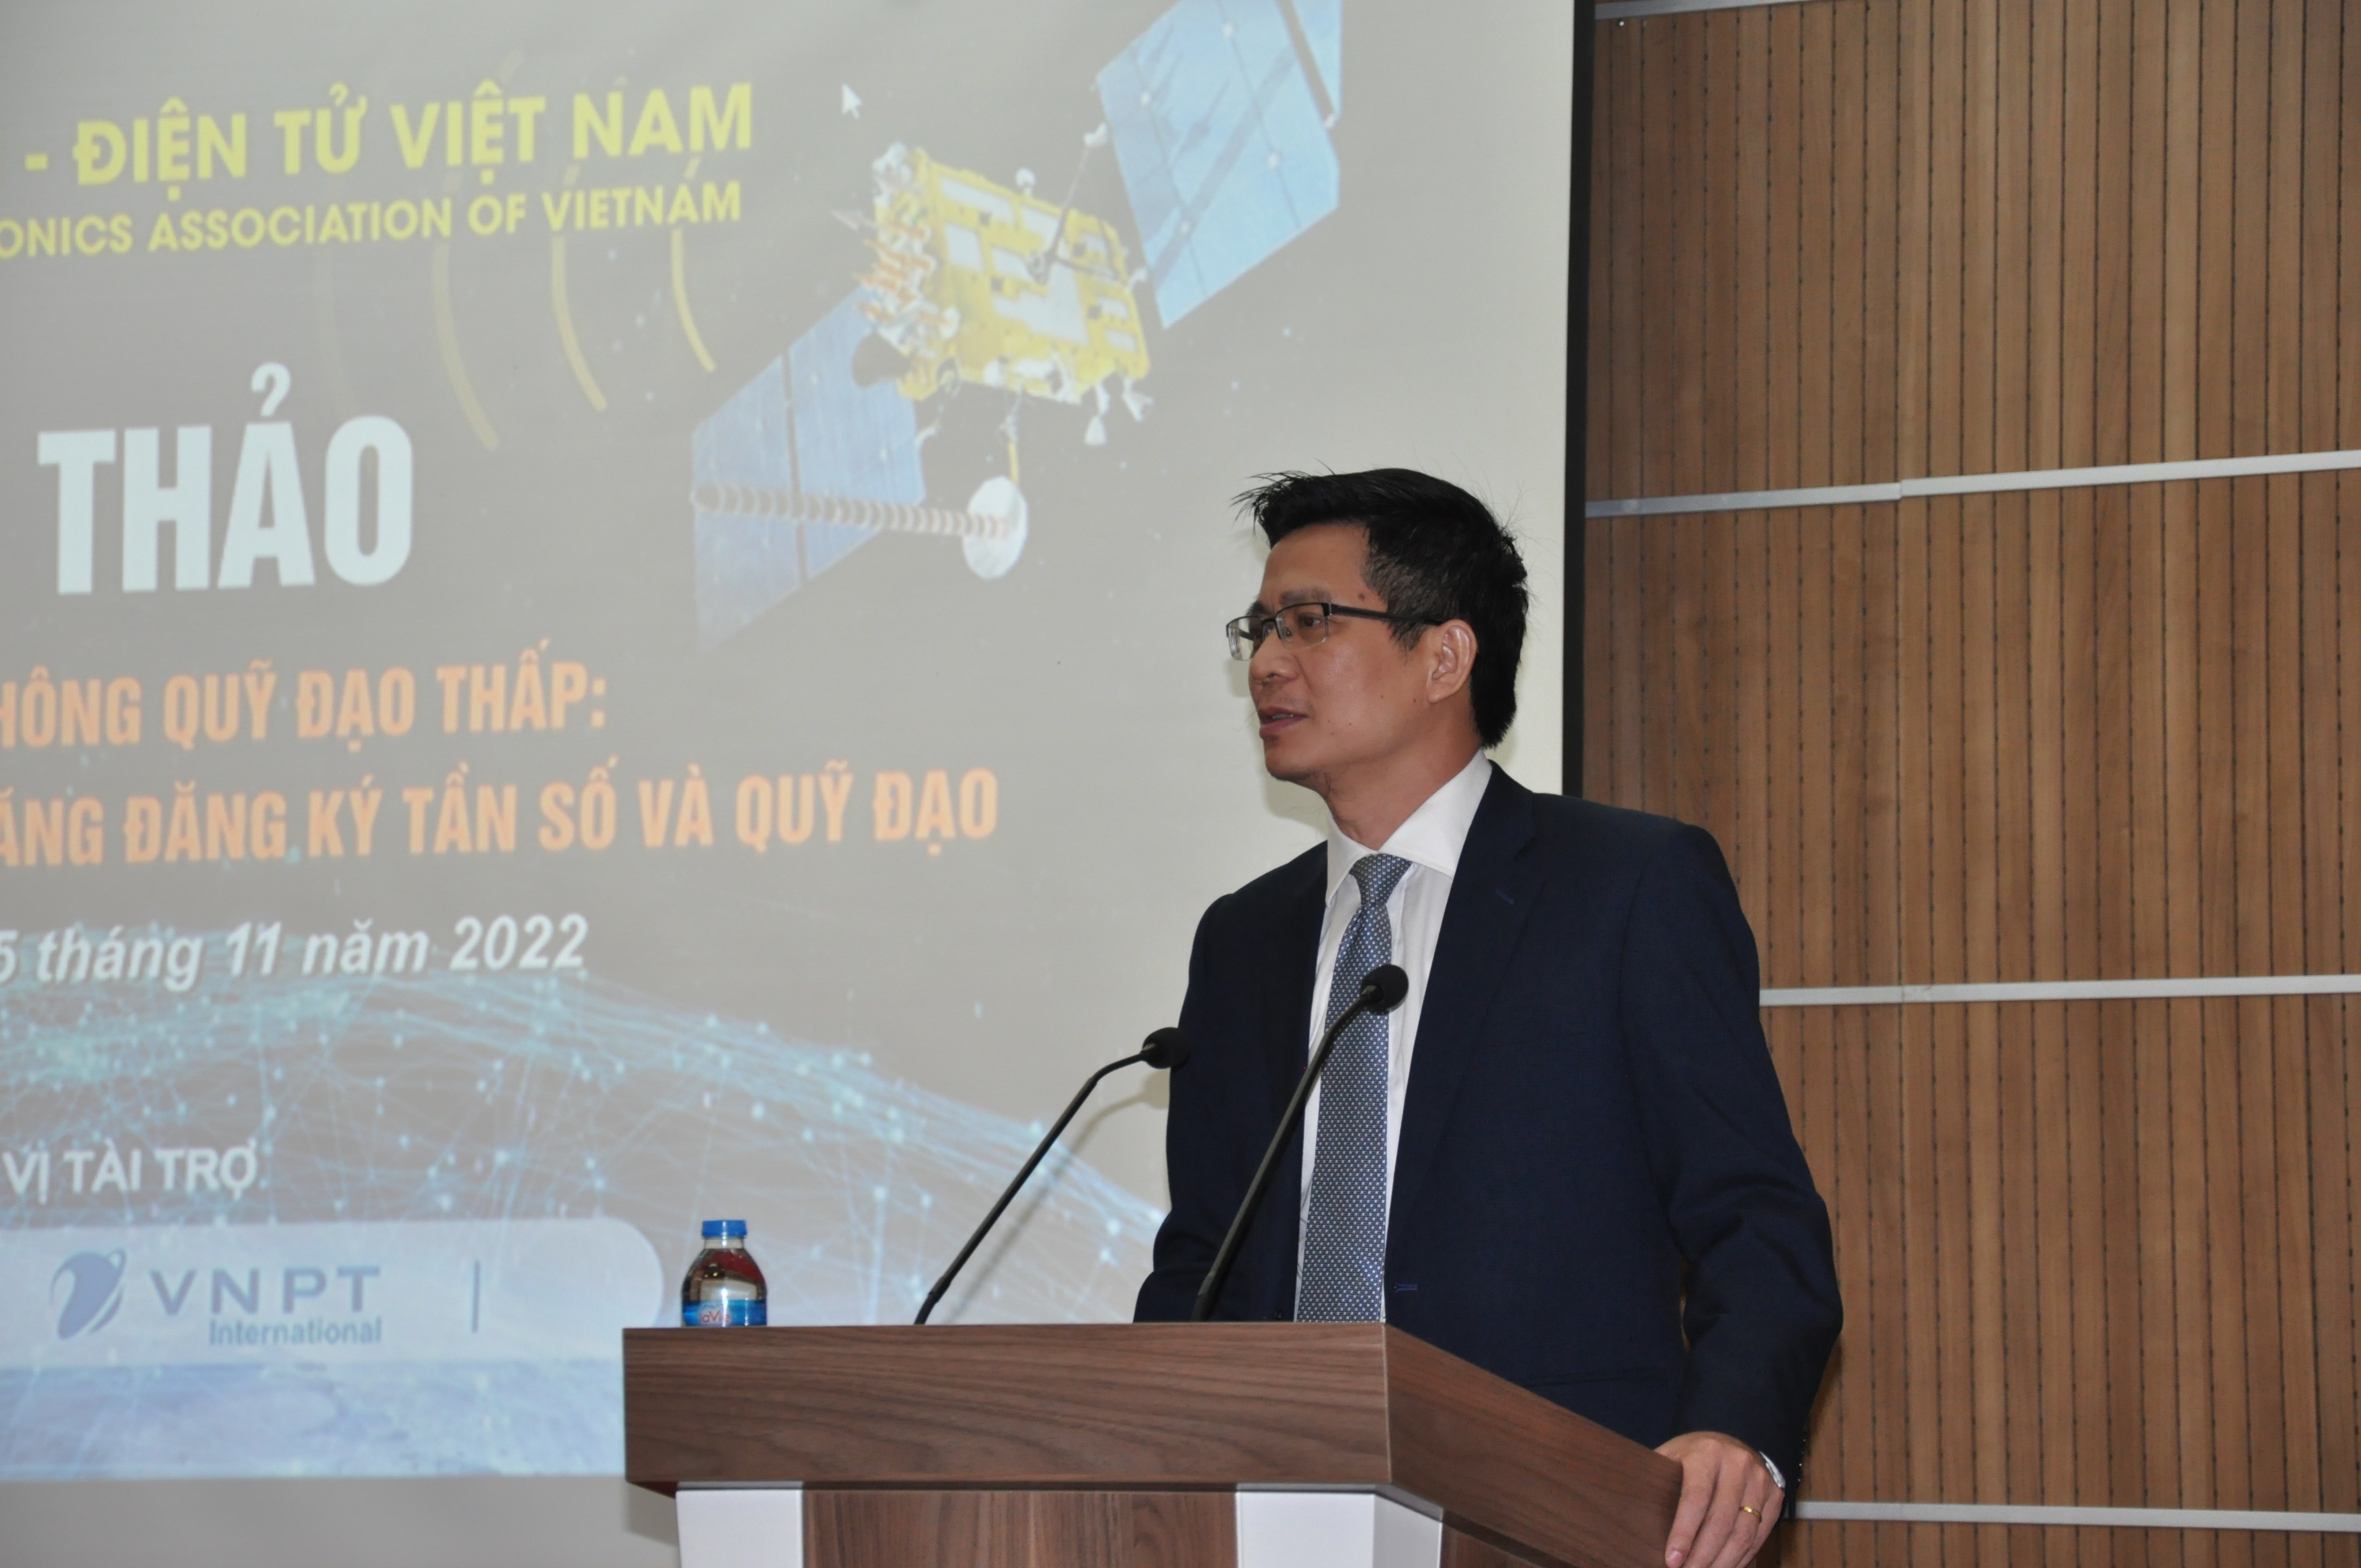 Cục trưởng Cục Tần số vô tuyến điện, Bộ TT&TT Lê Văn Tuấn trao đổi về vấn đề vệ tinh trong xu thế hiện nay